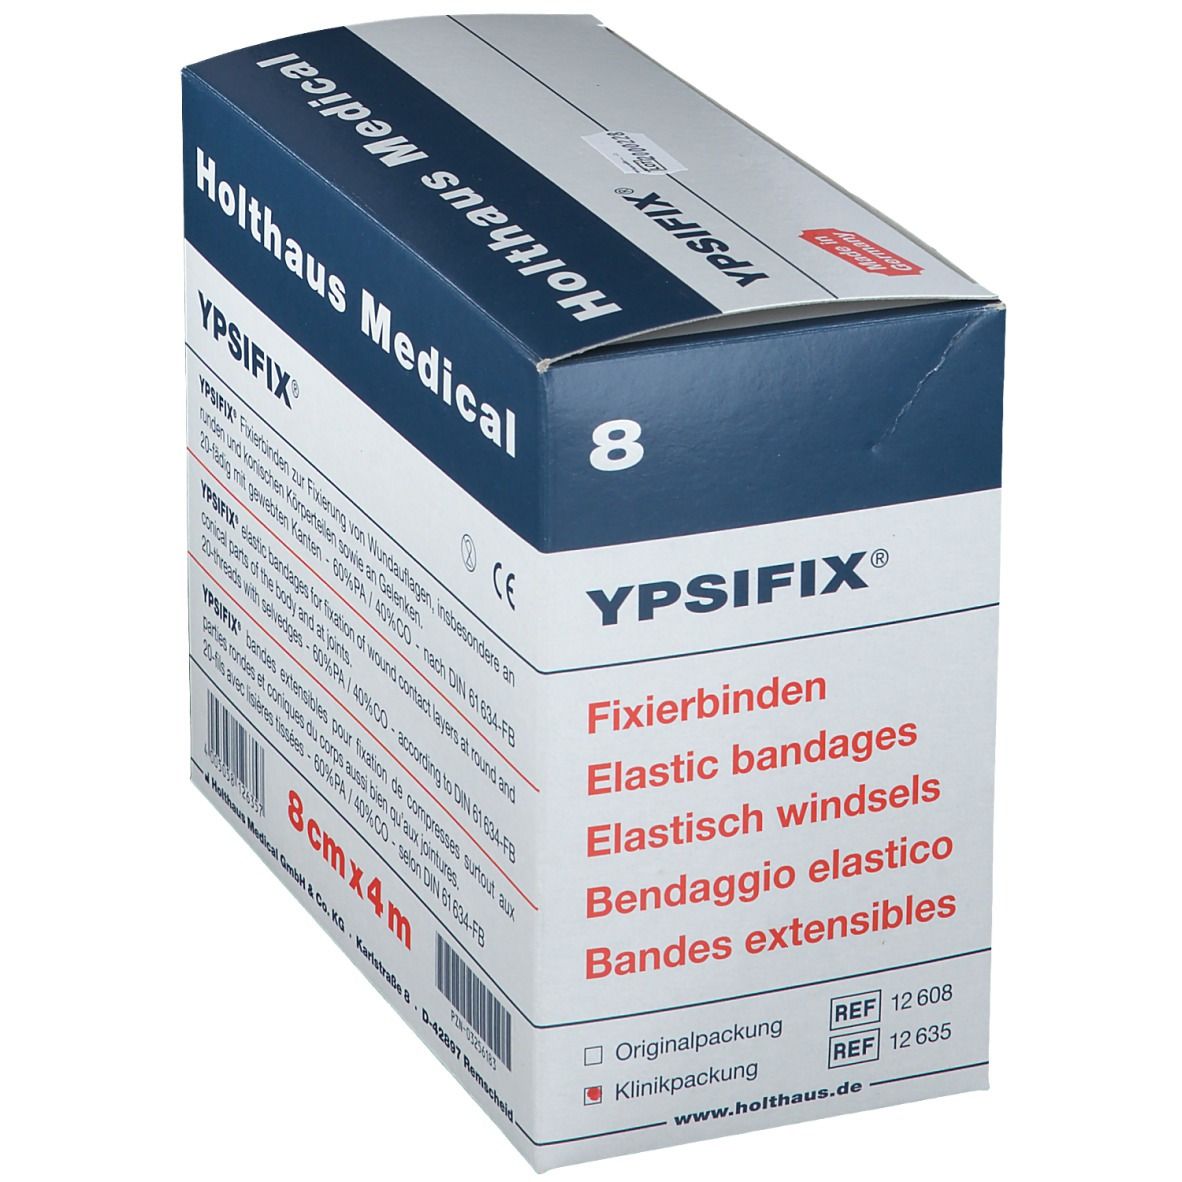 YPSIFIX® Fixierbinden elastisch 8 cm x 4 m lose